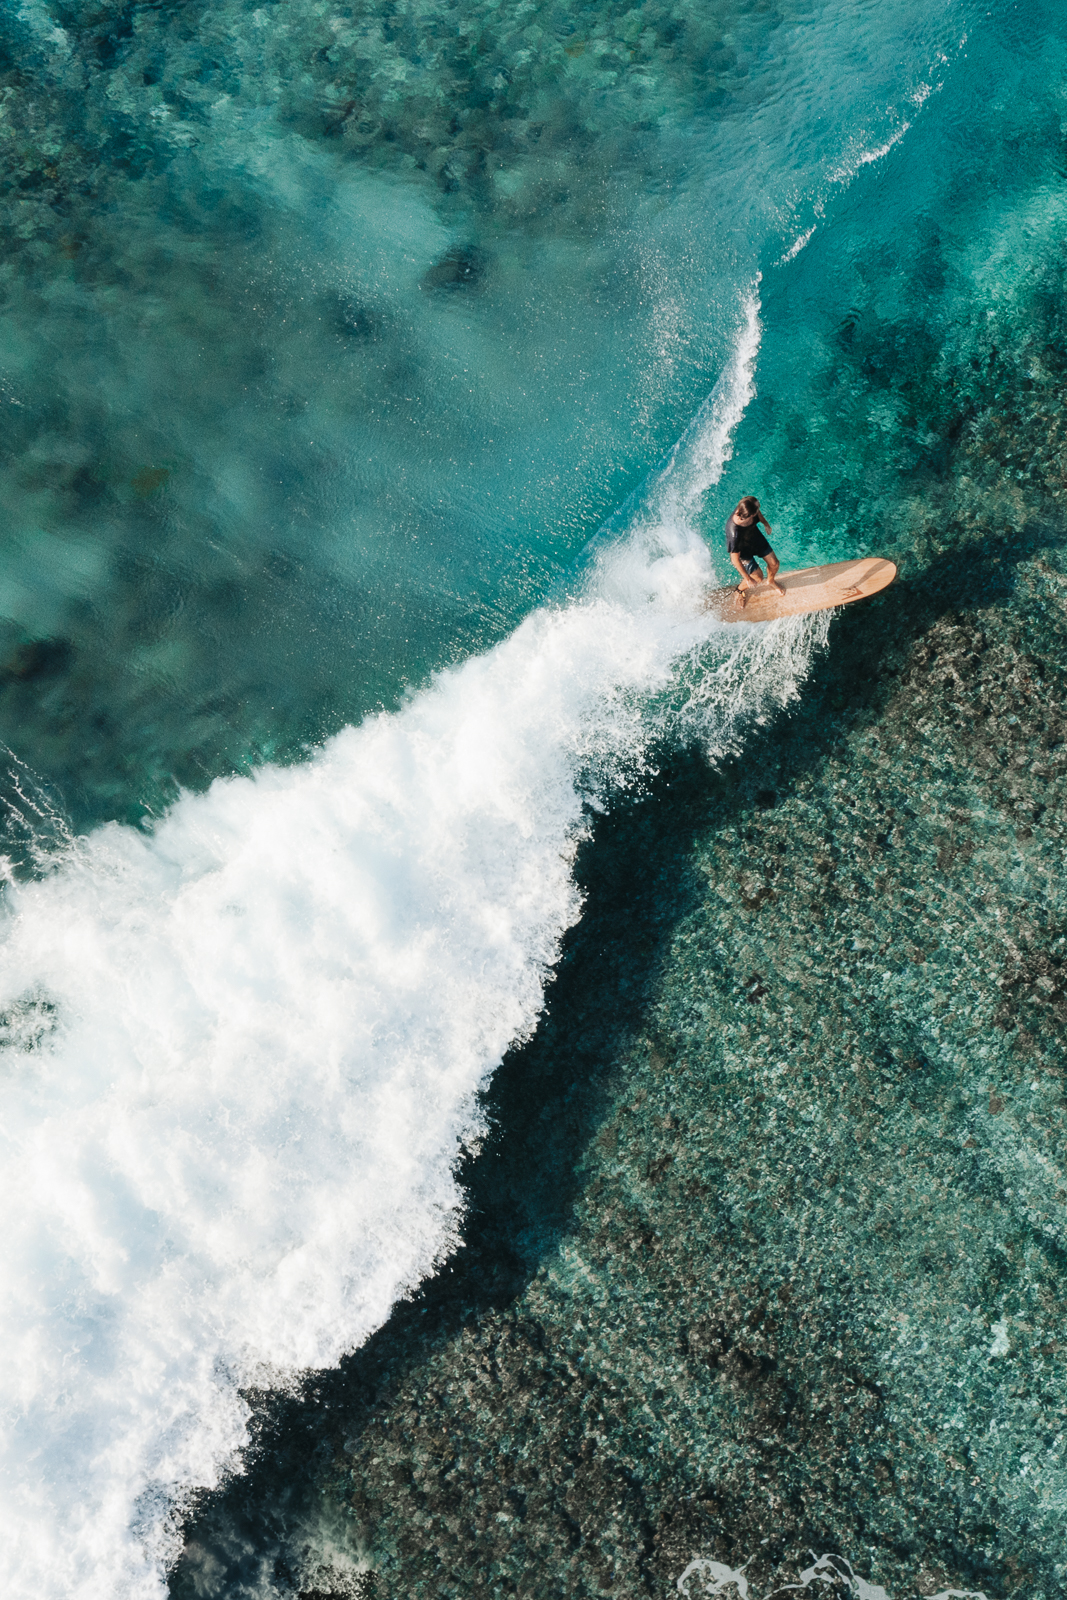 reef break surfing at Six Senses Laamu